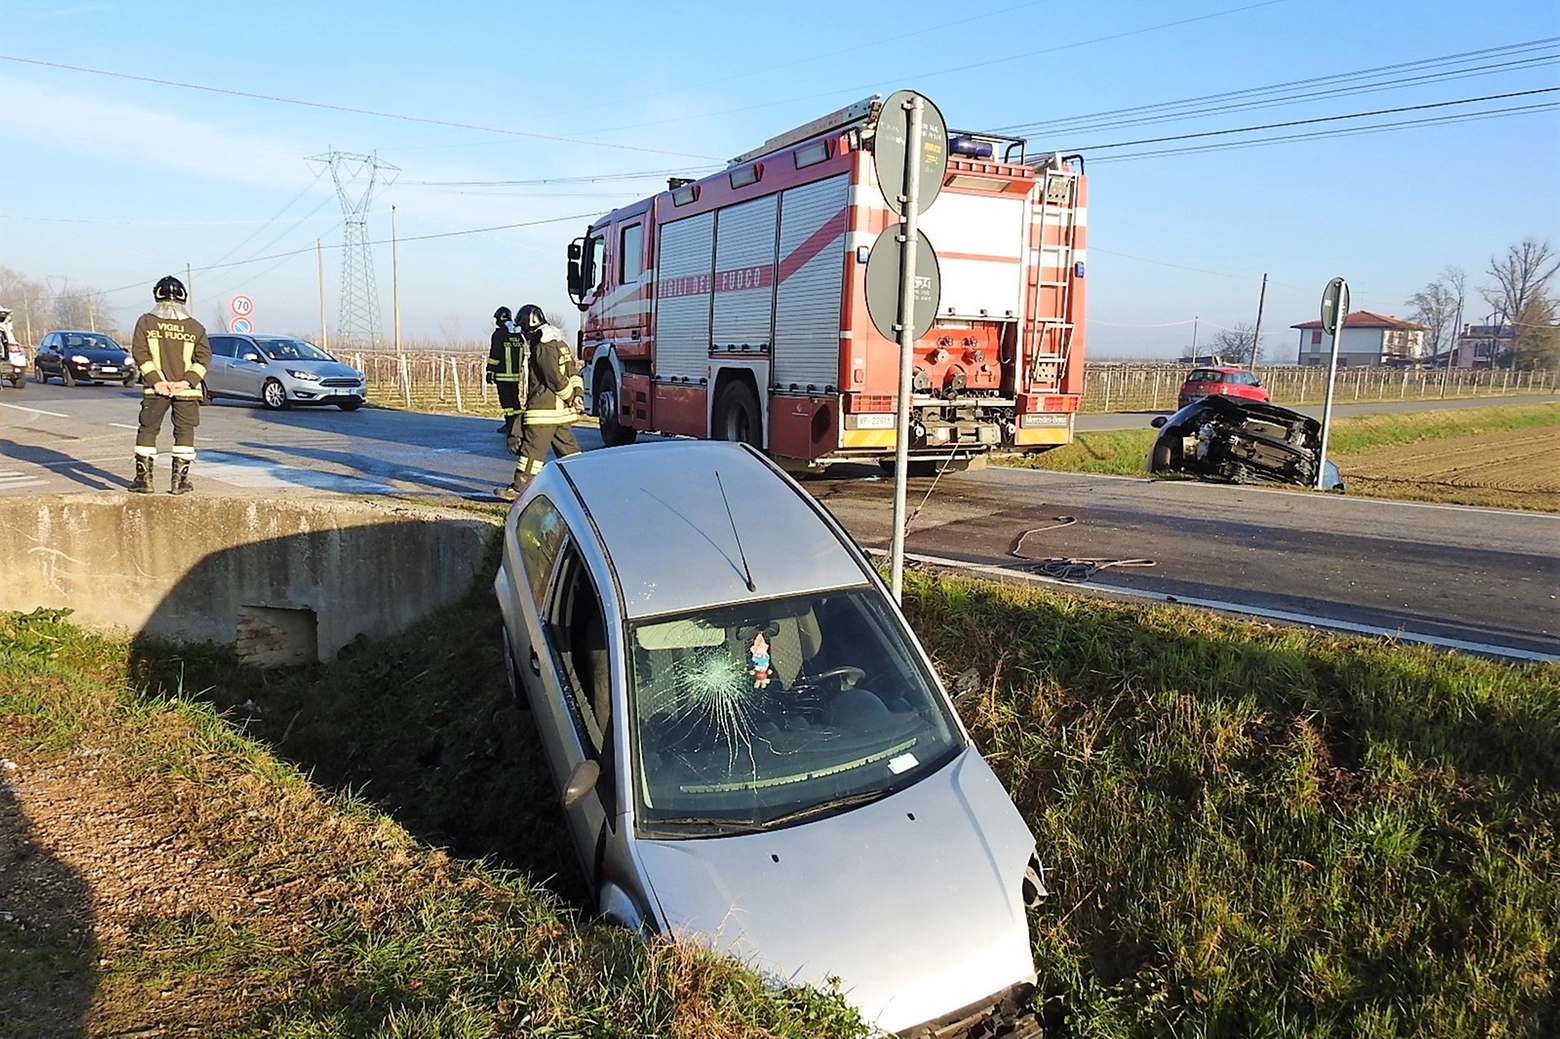 L'incidente si è verificato all'intersezione tra via Tomba e via Sant'Andrea (Scardovi)